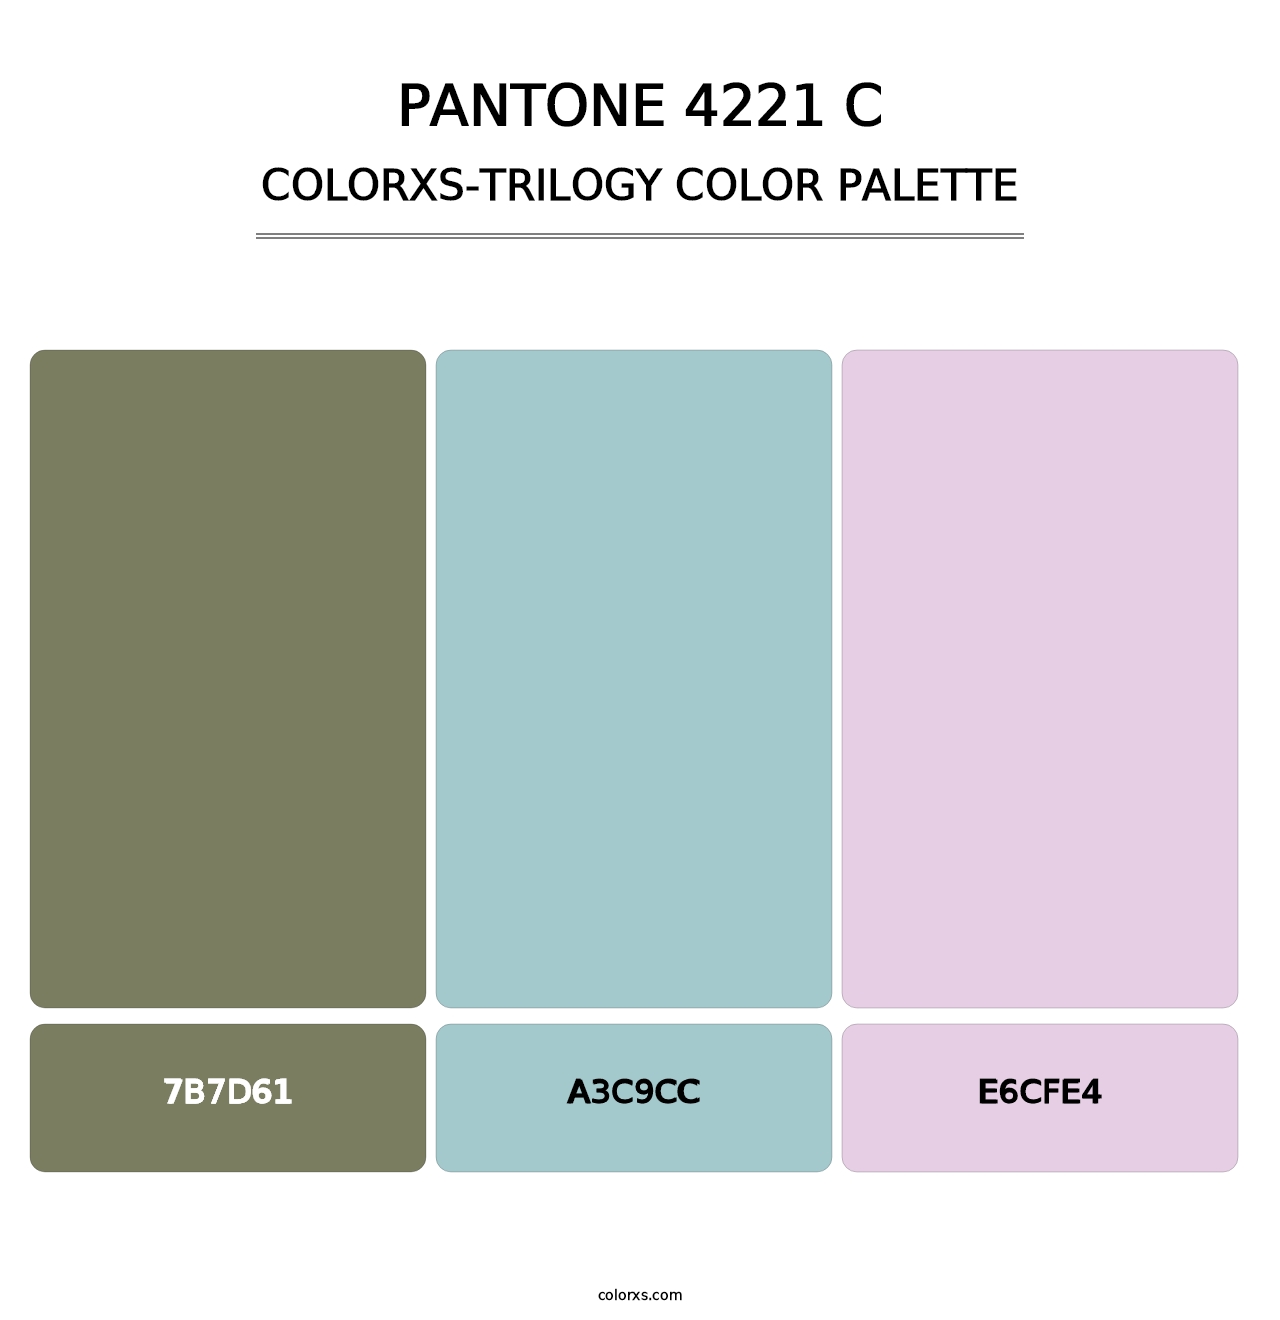 PANTONE 4221 C - Colorxs Trilogy Palette